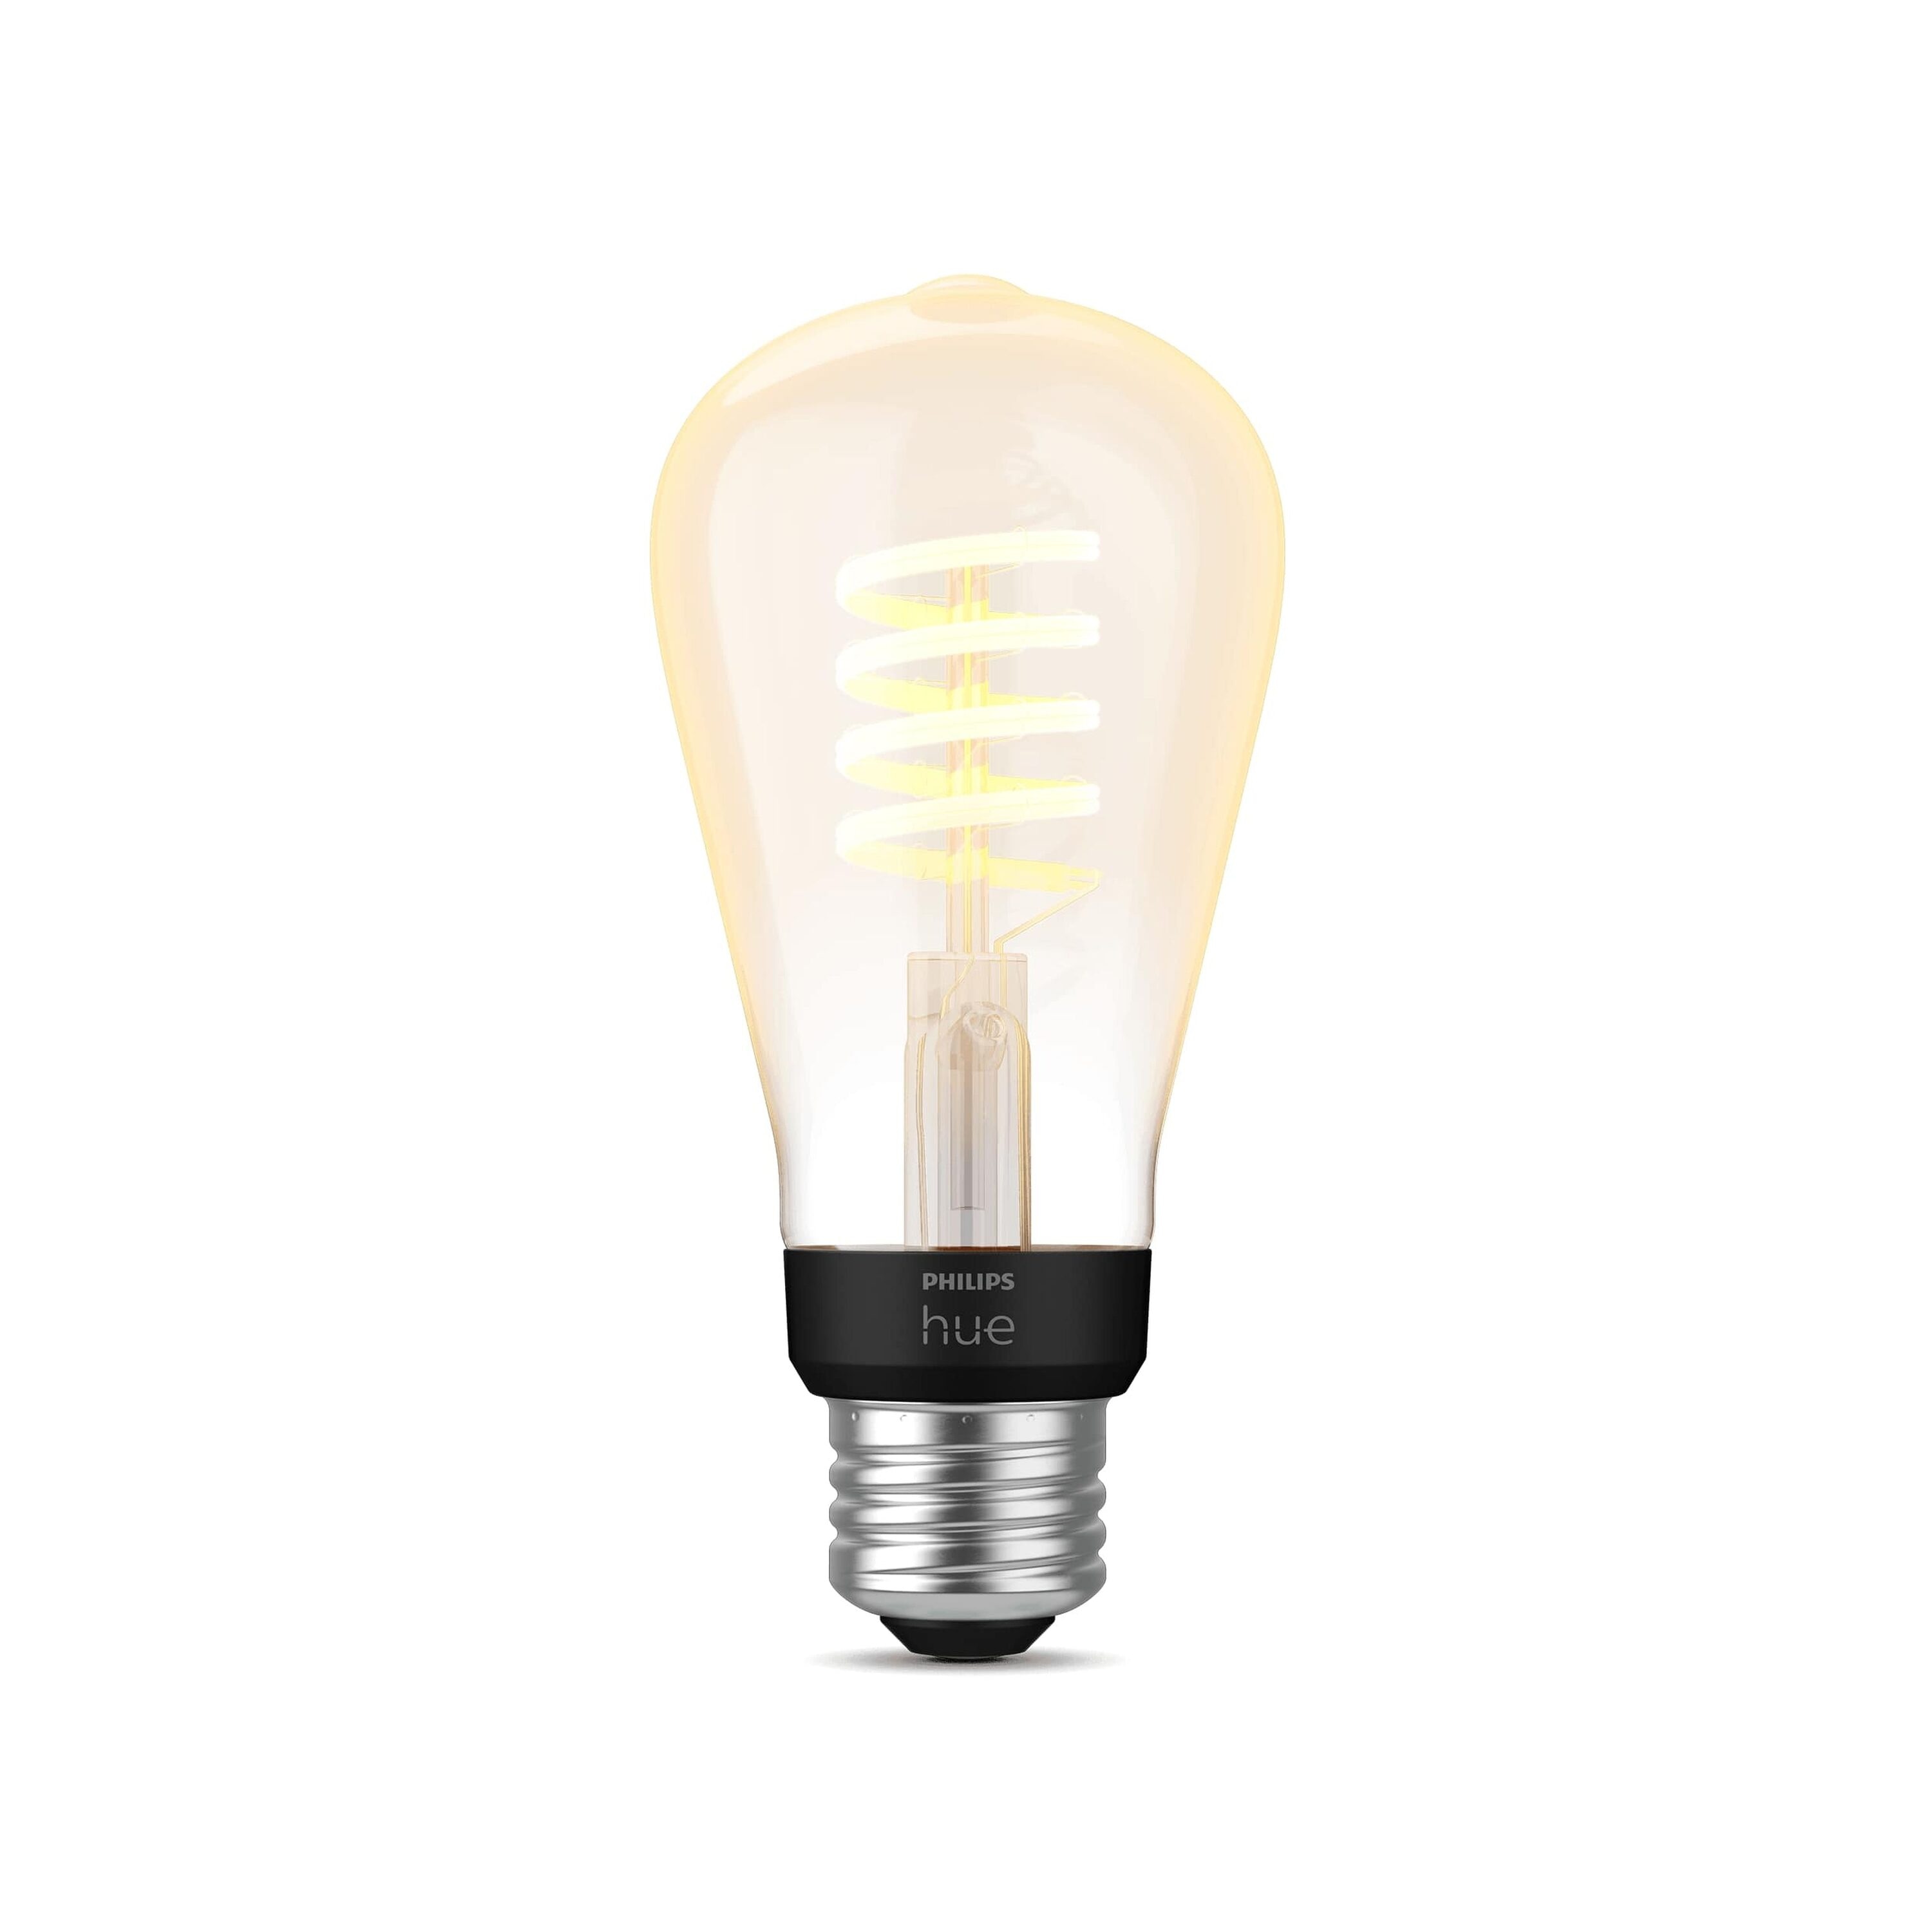 Philips HUE Ampoule LED intelligente 100W Equivalent PAR38 Tunable White  (2200-5000K) Dimm